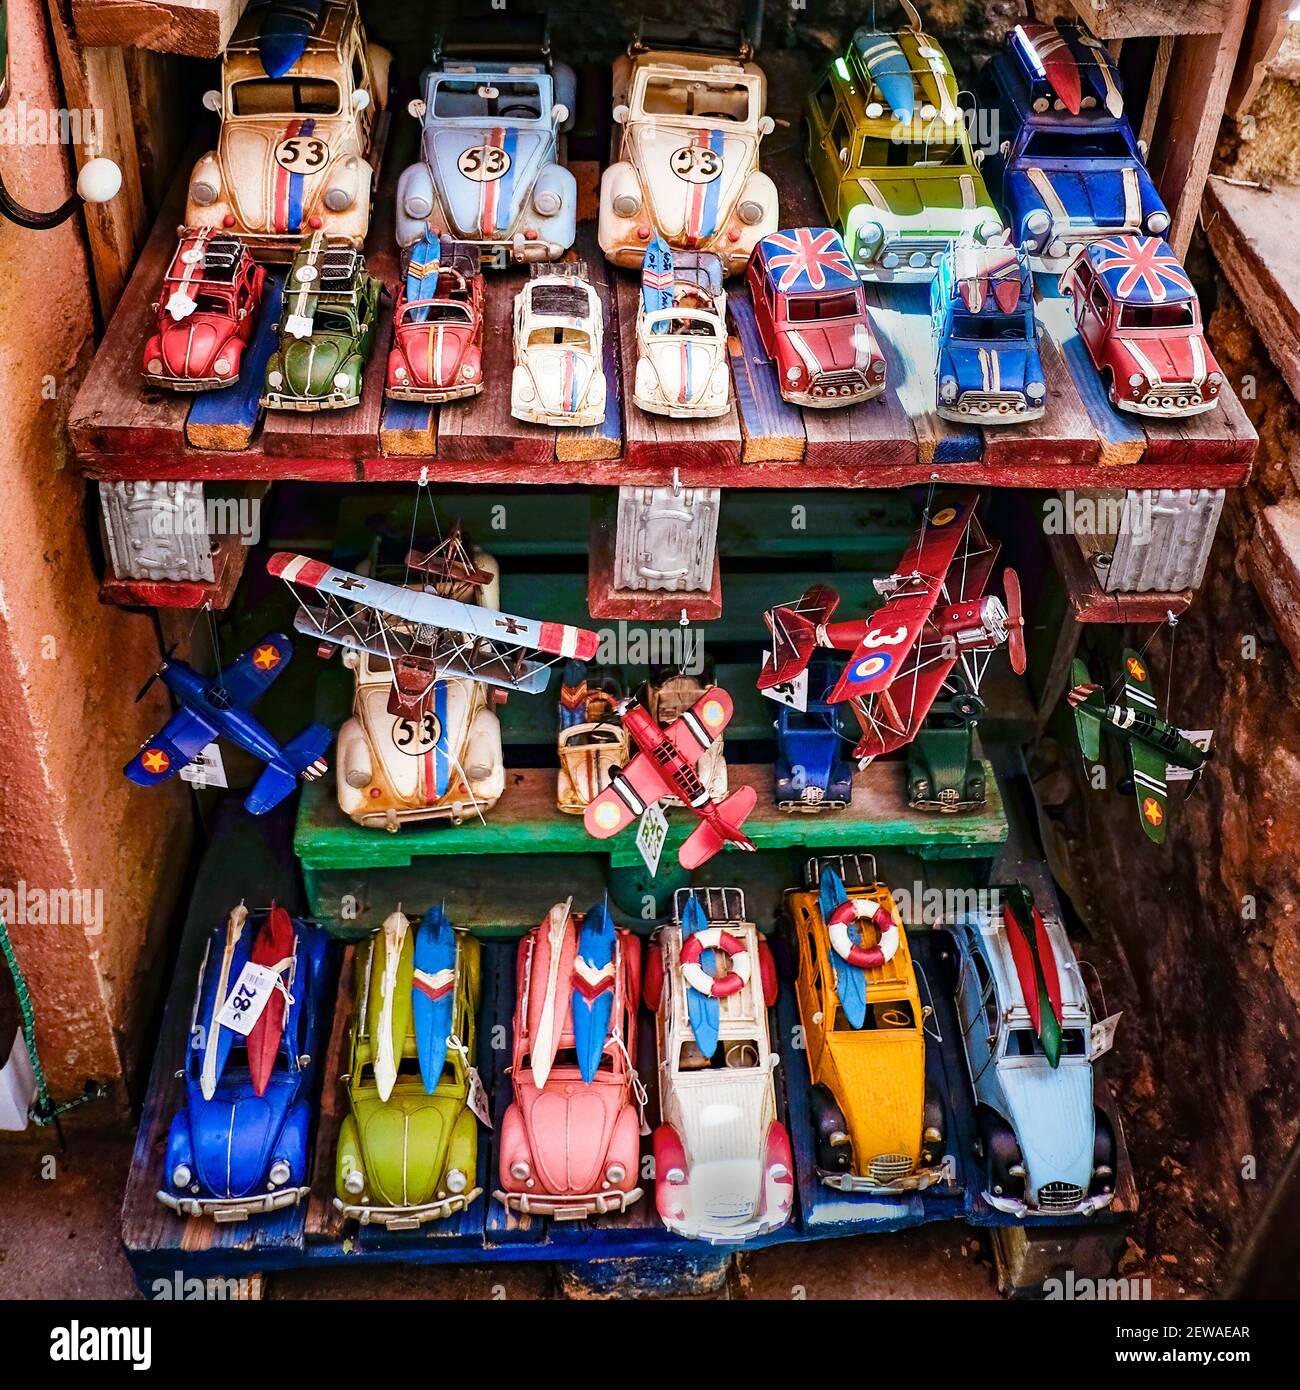 Étagères d'un magasin de jouets artisanaux avec des voitures classiques vintage avec l'esthétique hippie, drapeaux anglais et planches de surf, avions de la première guerre mondiale, squat Banque D'Images